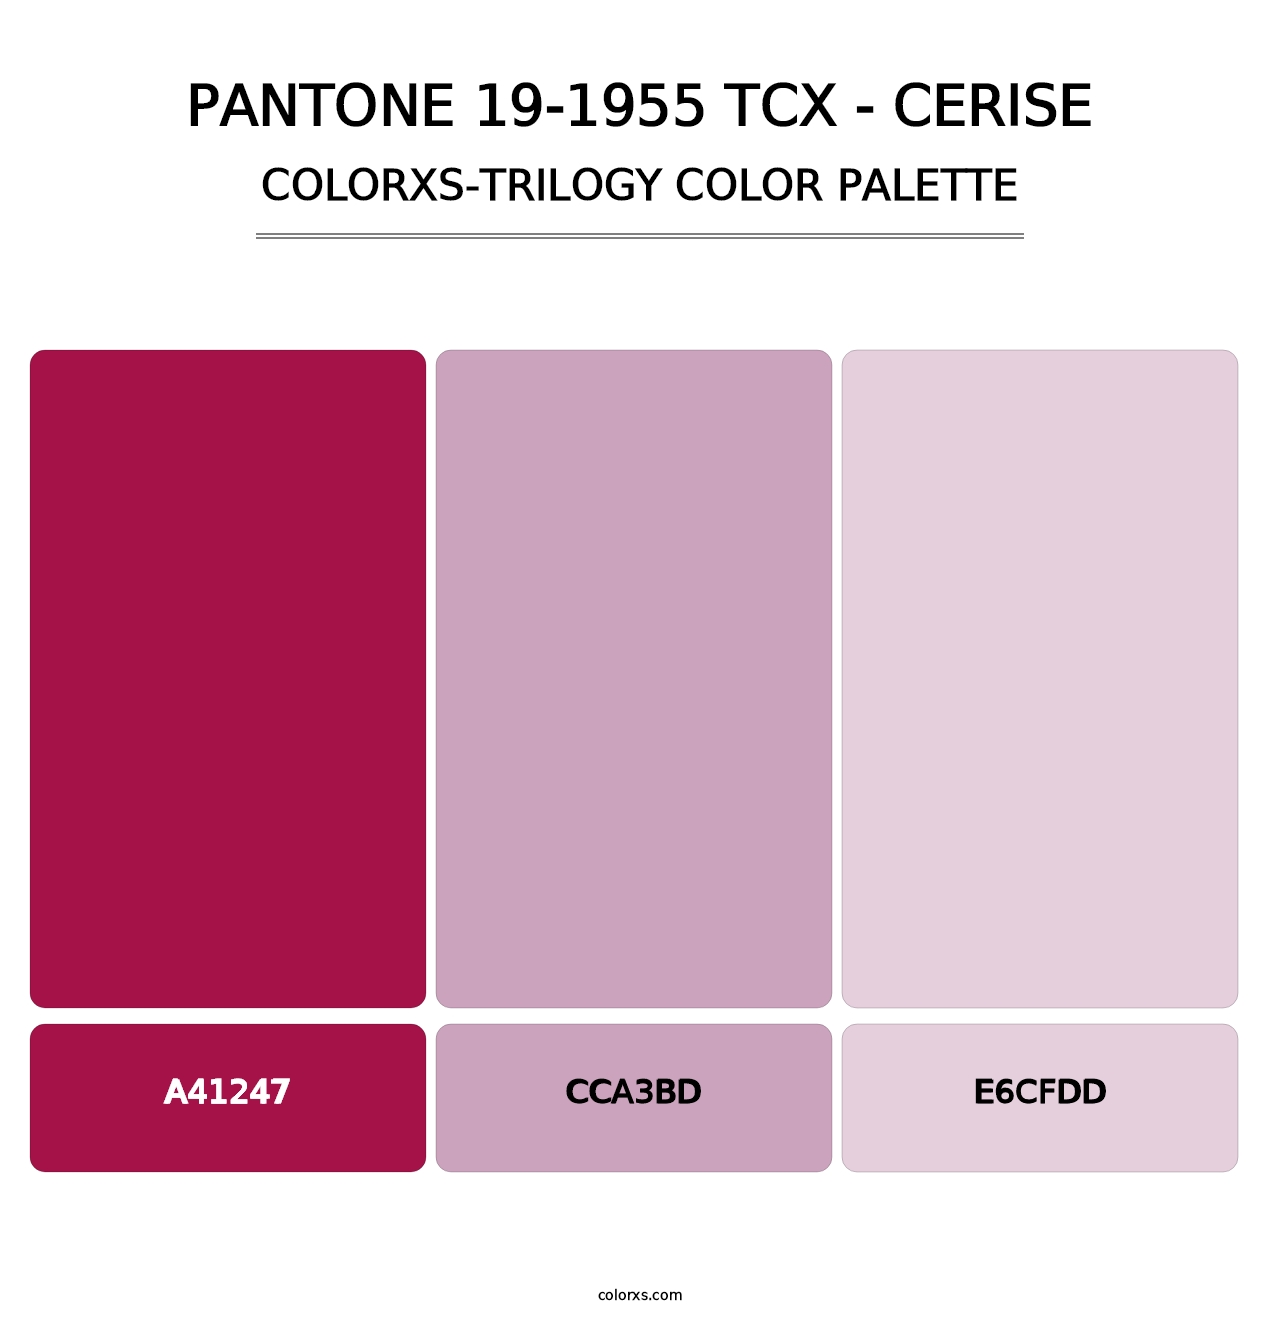 PANTONE 19-1955 TCX - Cerise - Colorxs Trilogy Palette